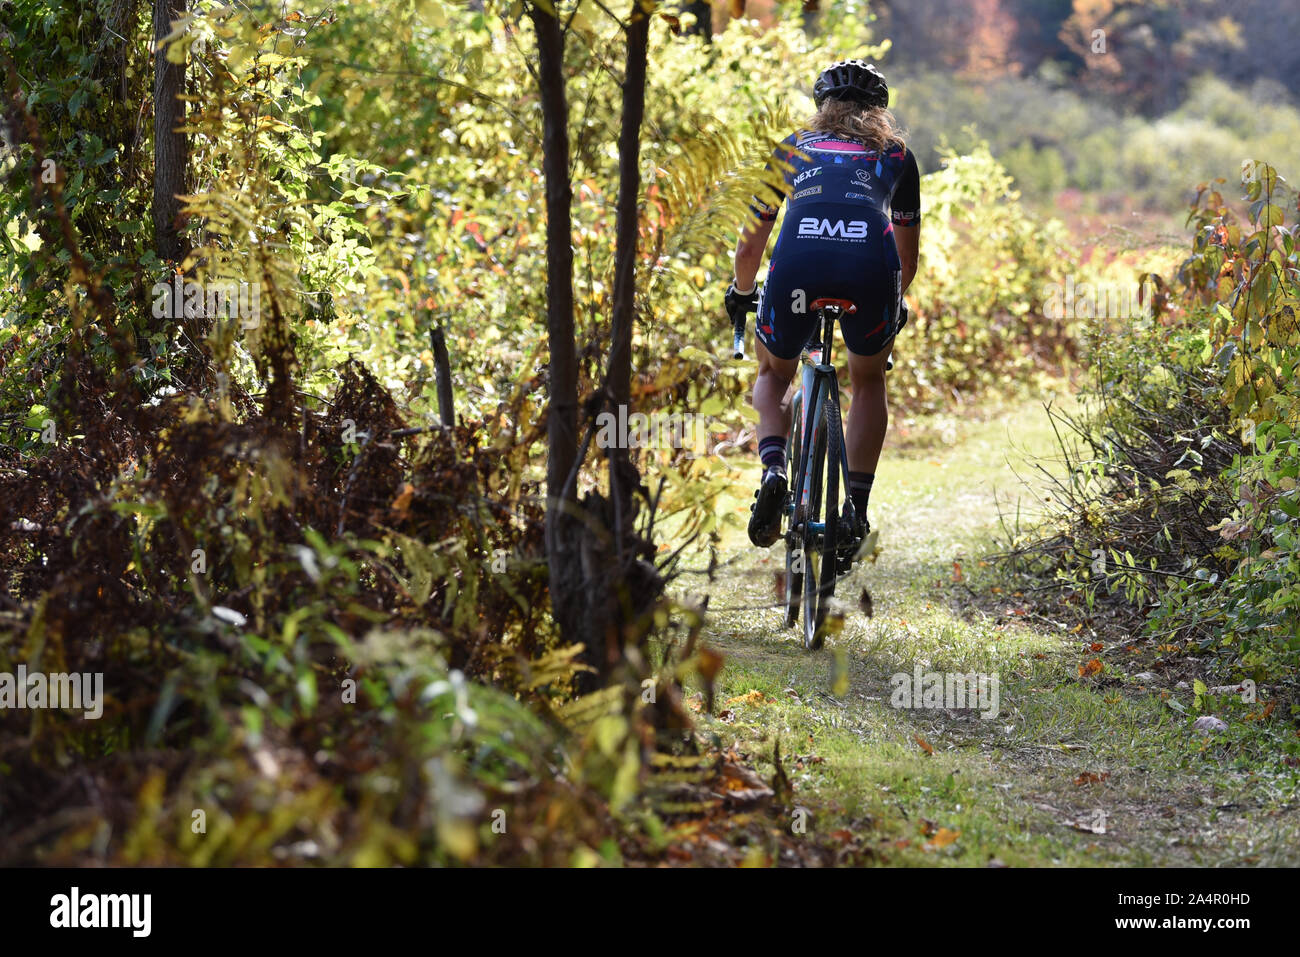 Les cyclistes en compétition dans des courses de cyclo-cross, barrage Wrightsville Cyclo-Cross, Middlesex, VT, USA. Banque D'Images